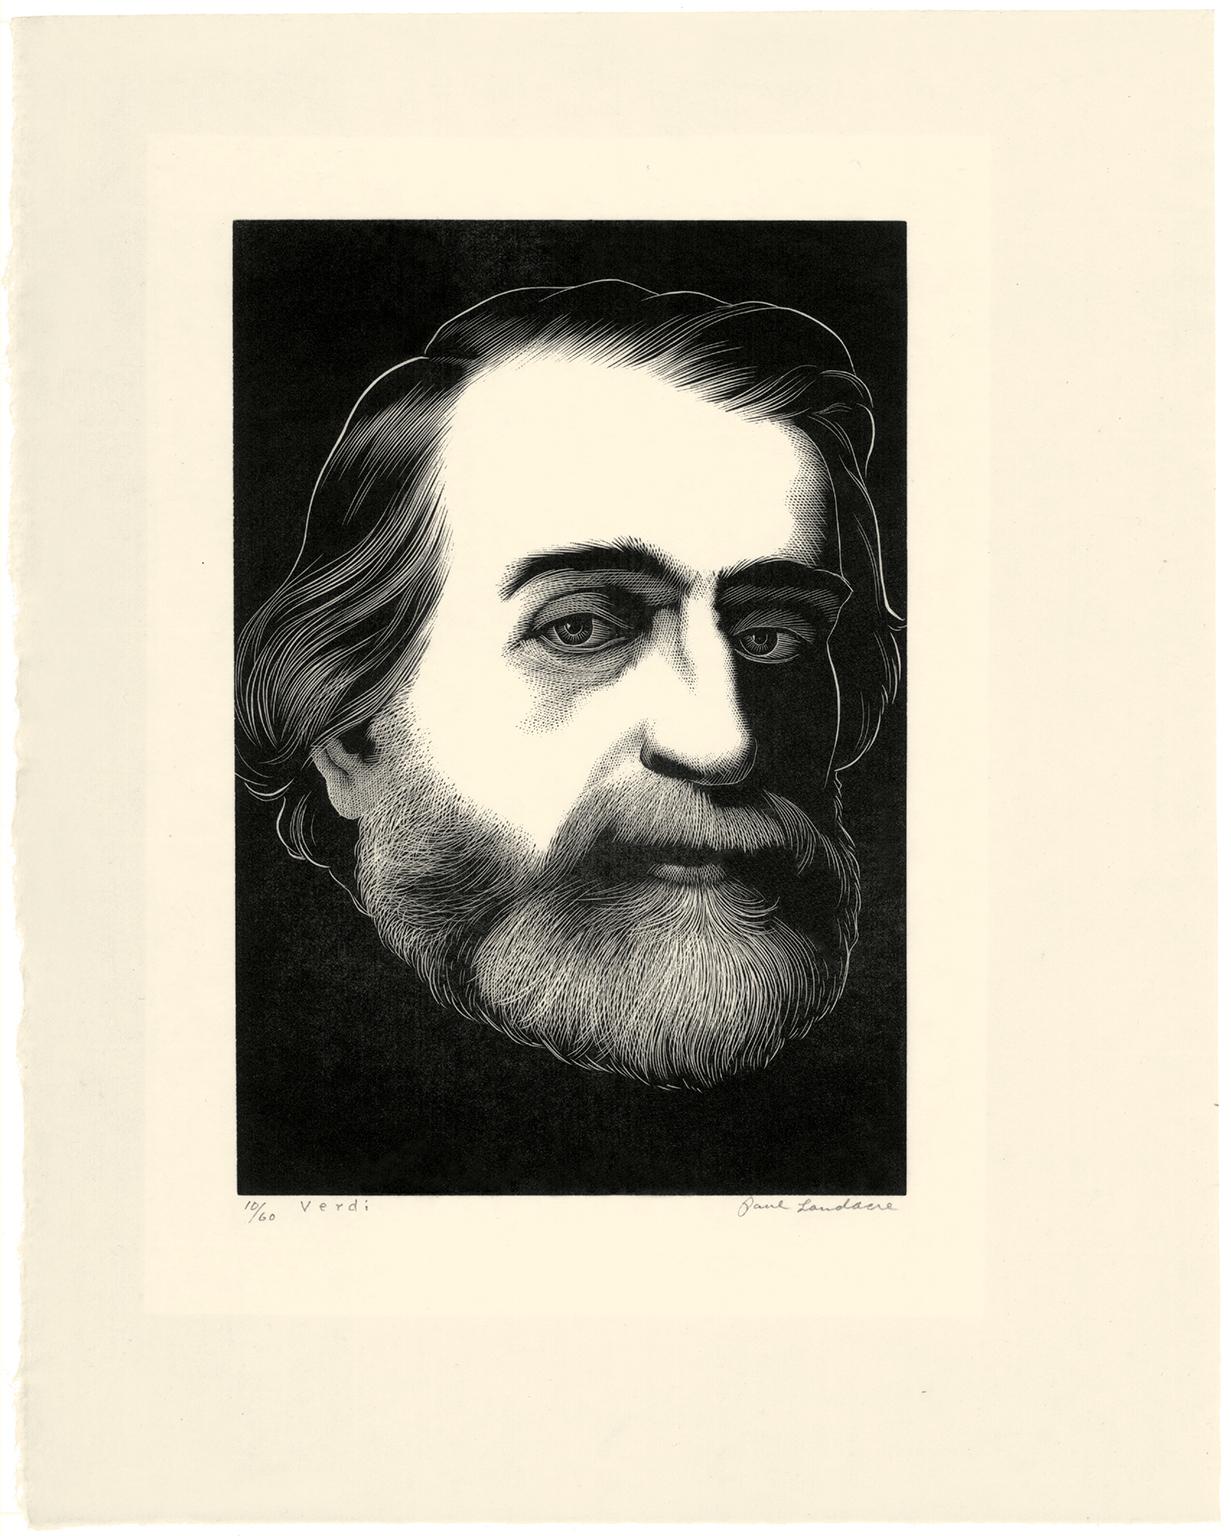 'Verdi' - Amerikanische Moderne der 1930er Jahre - Italienischer Opernkomponist – Print von Paul Landacre